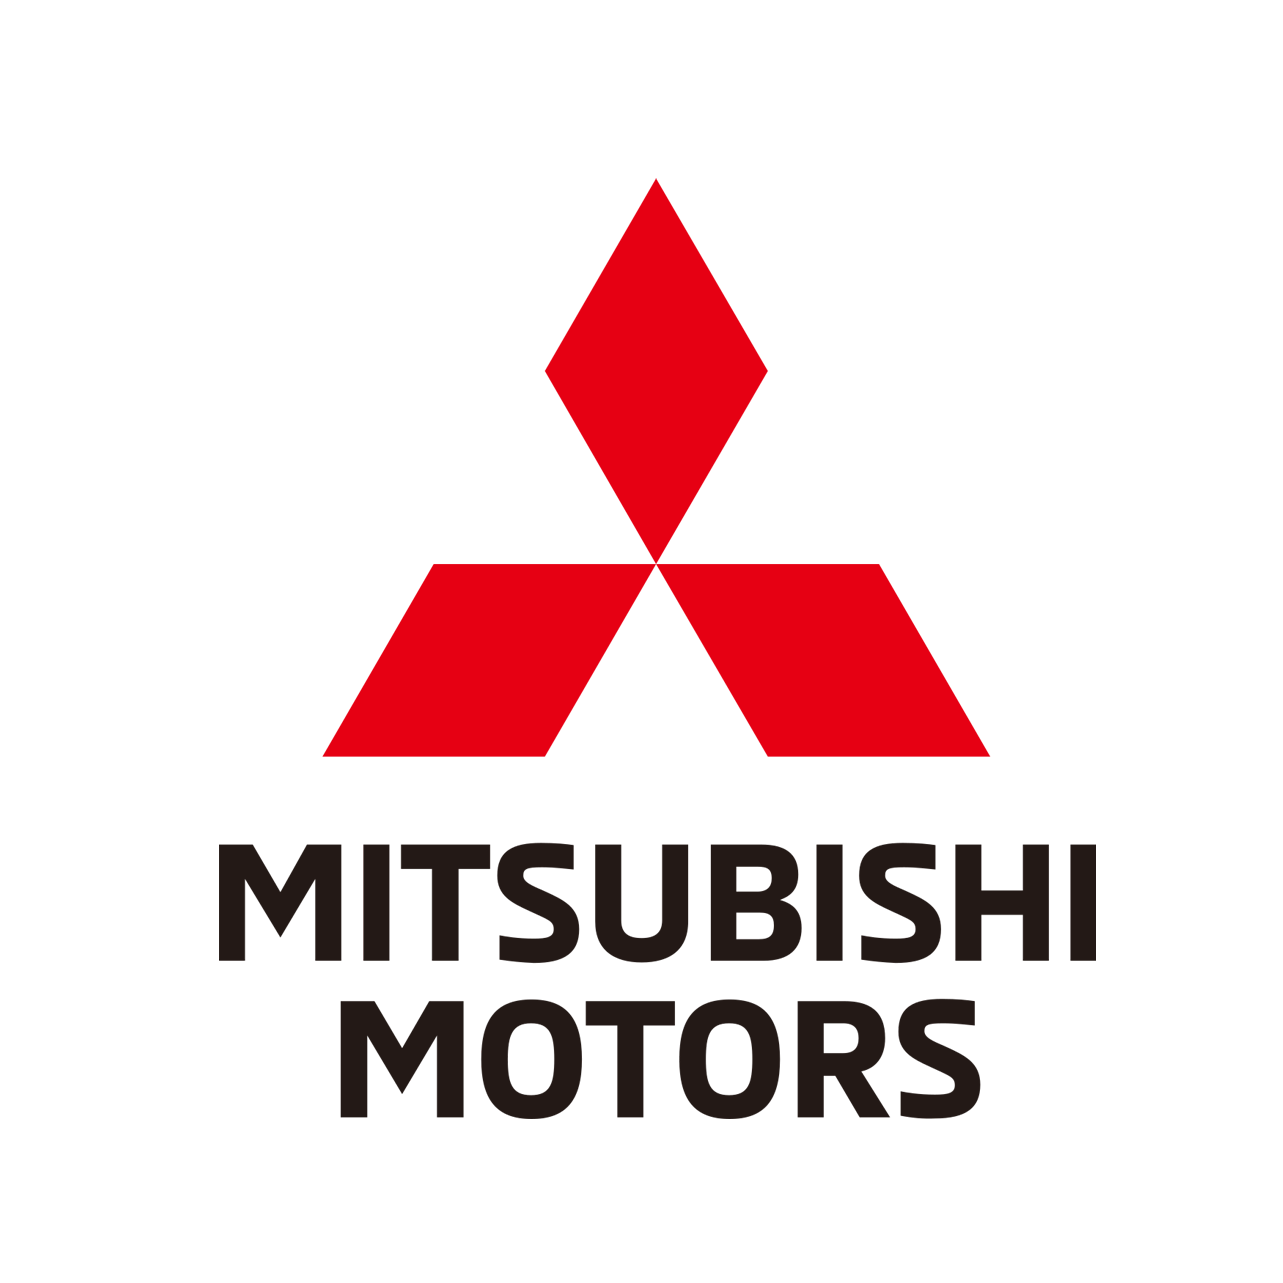 Mitsubishi Motors Abre Vagas De Empregos ~ EDITAL EMPREGOS 